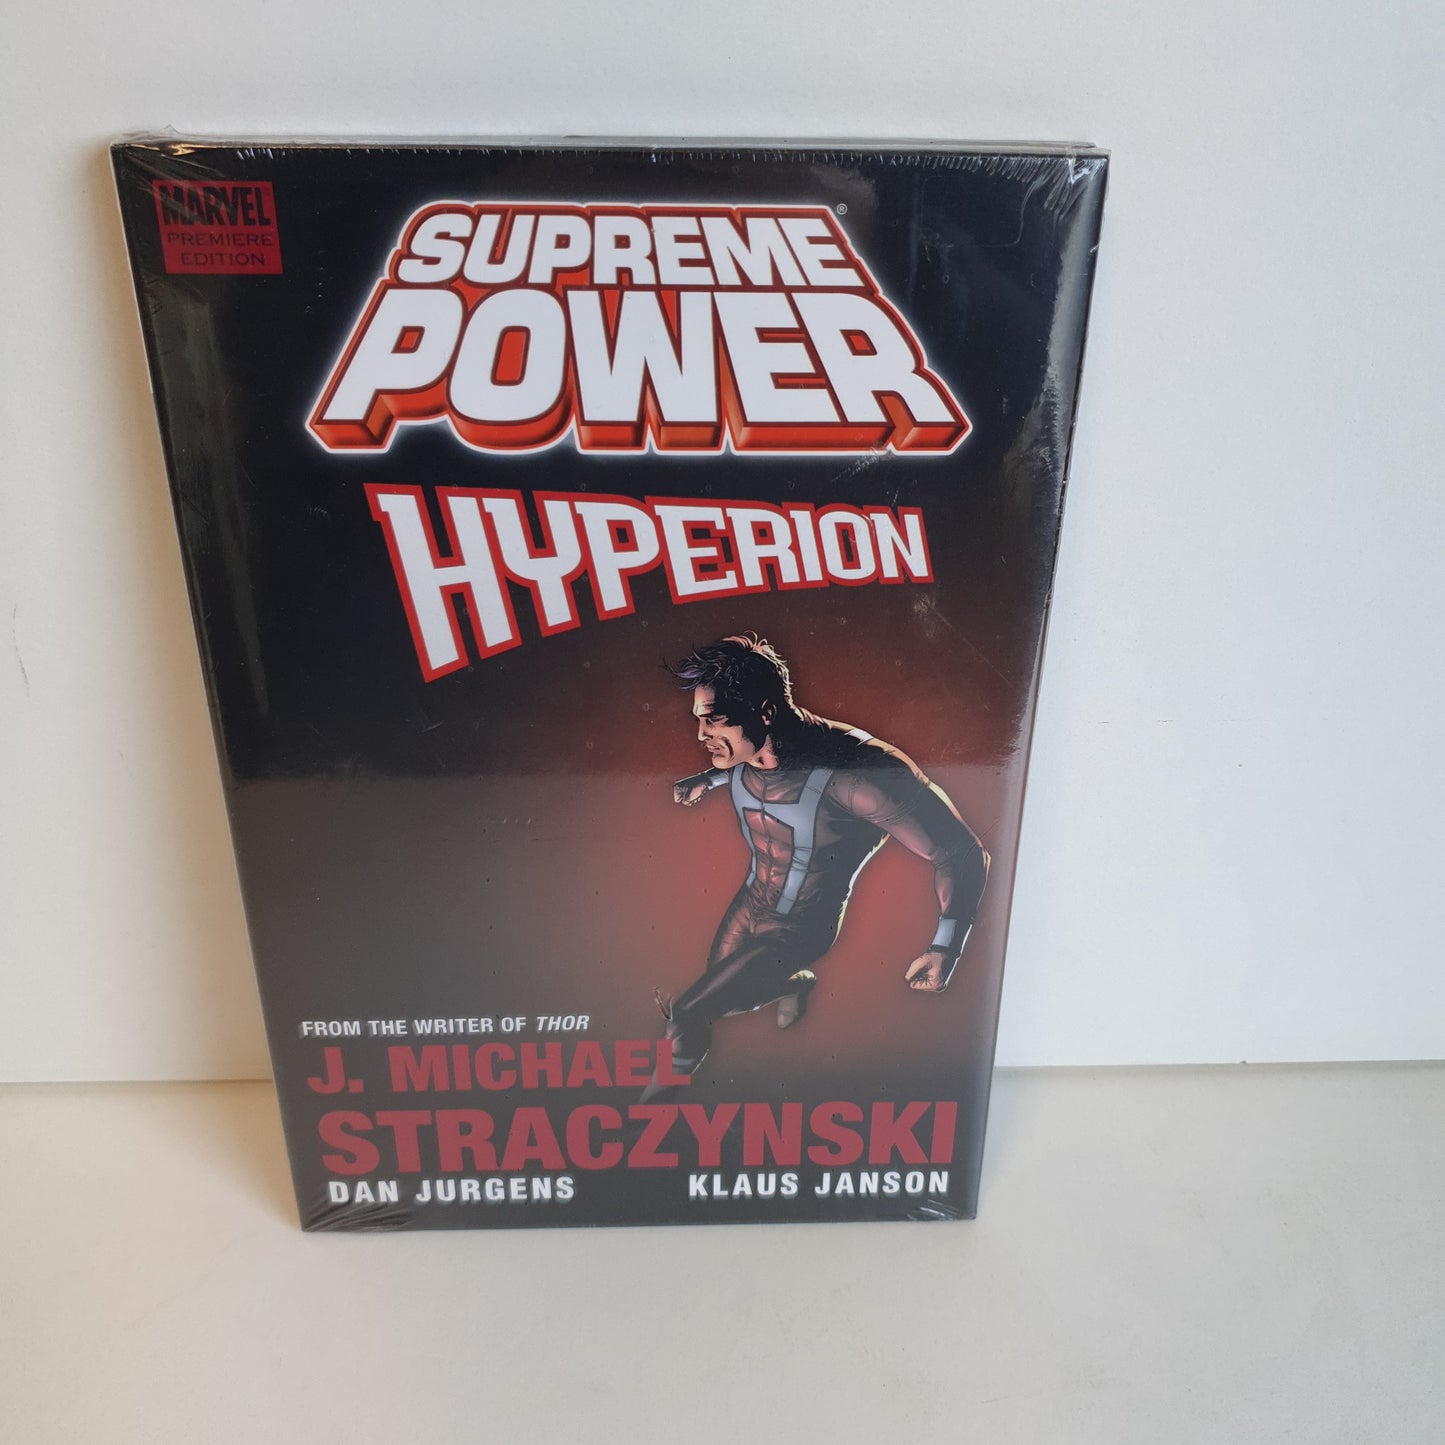 Supreme Power Hyperion by Straczynski, Jurgens & Janson